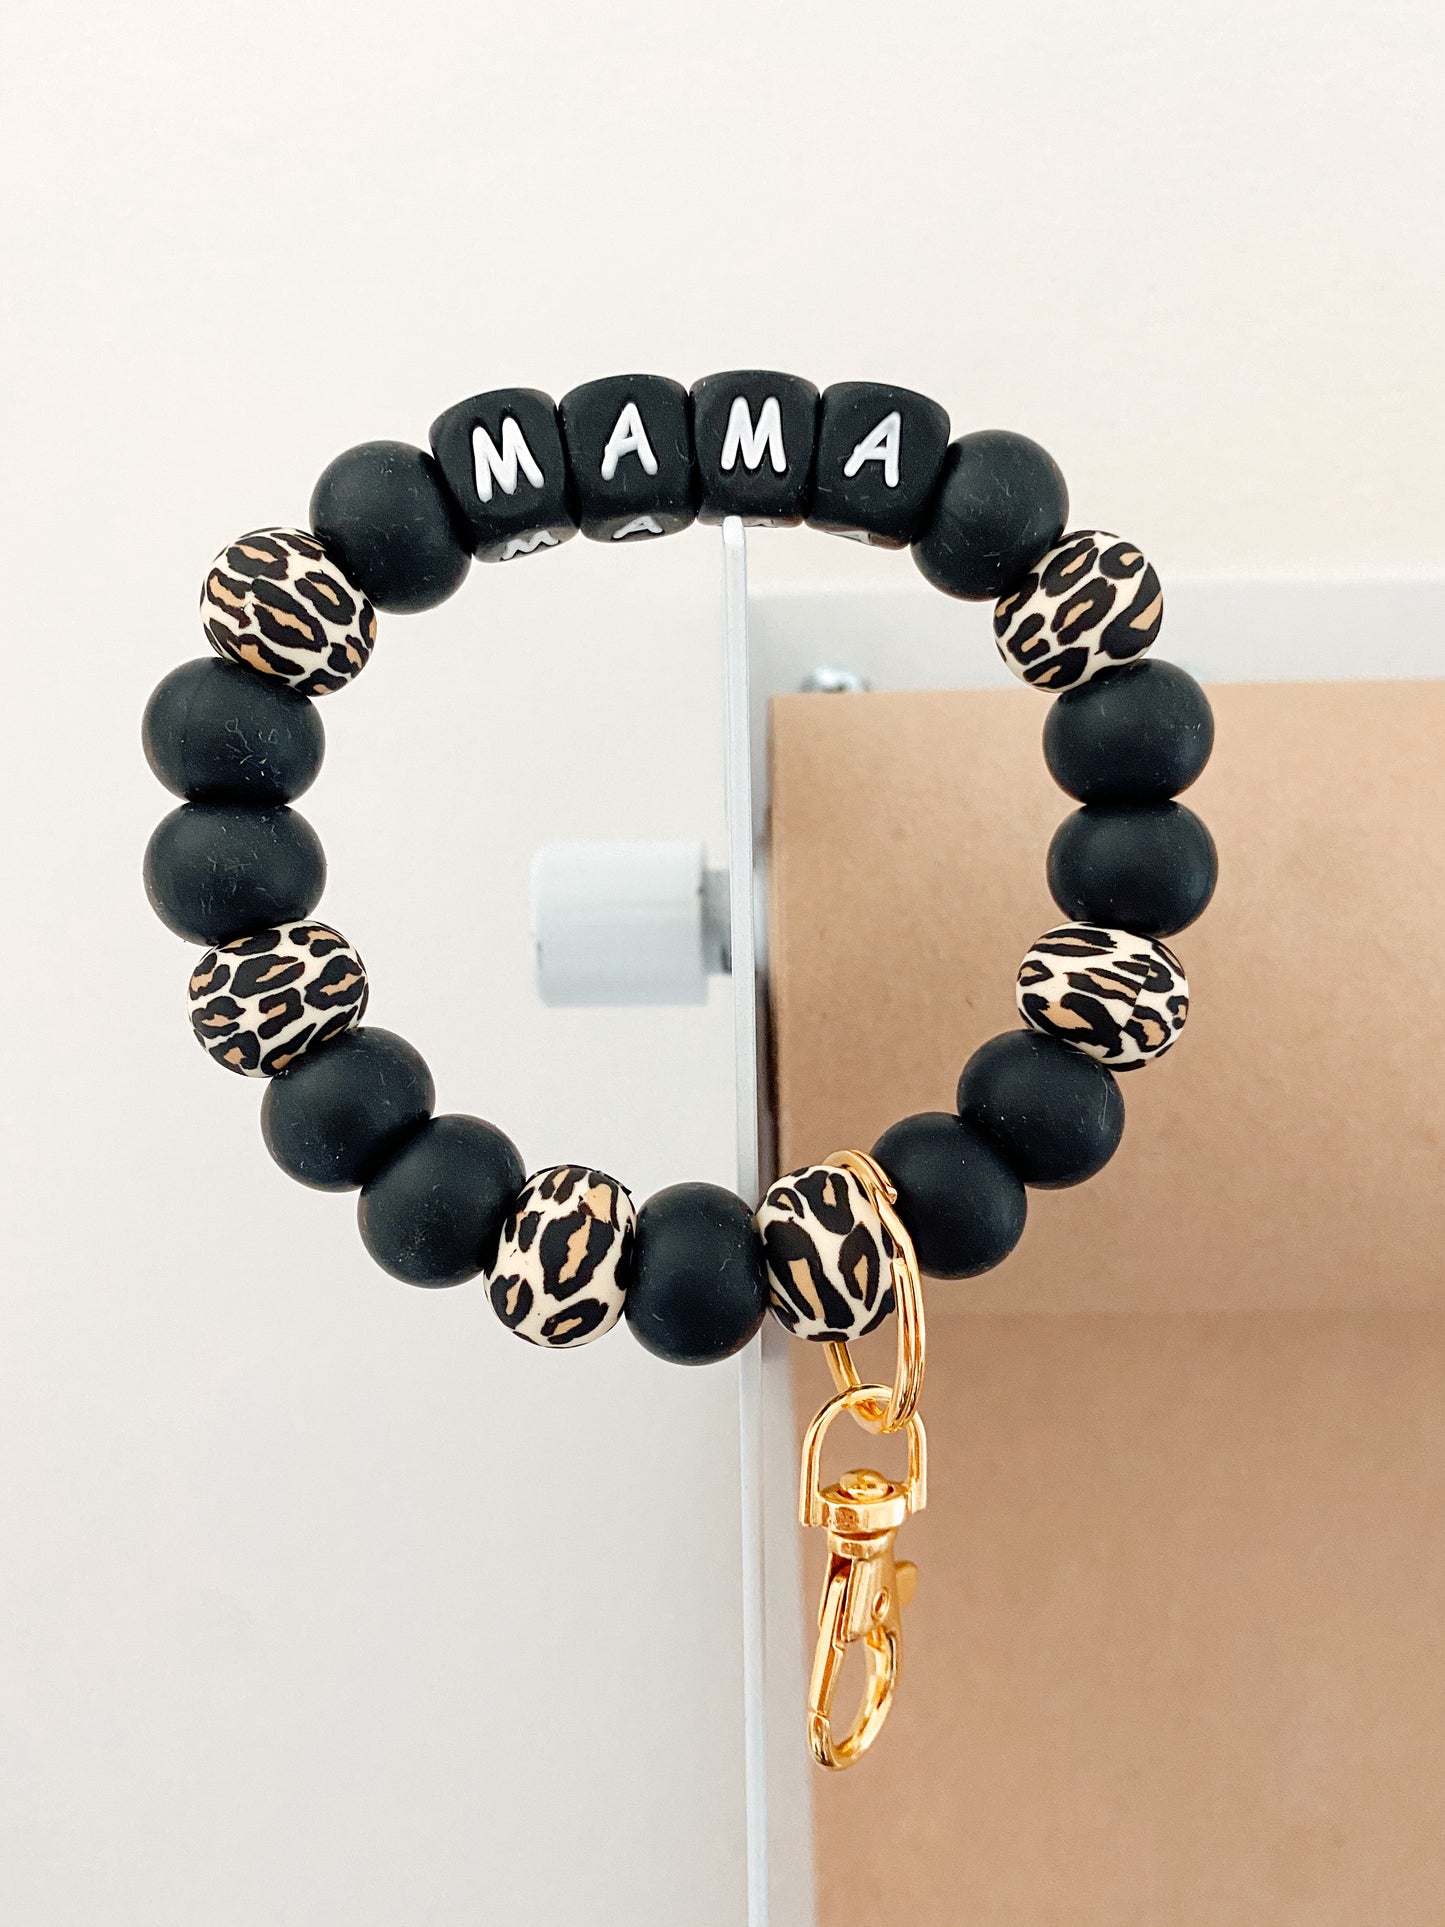 MAMA bracelet keychain (black + leopard)